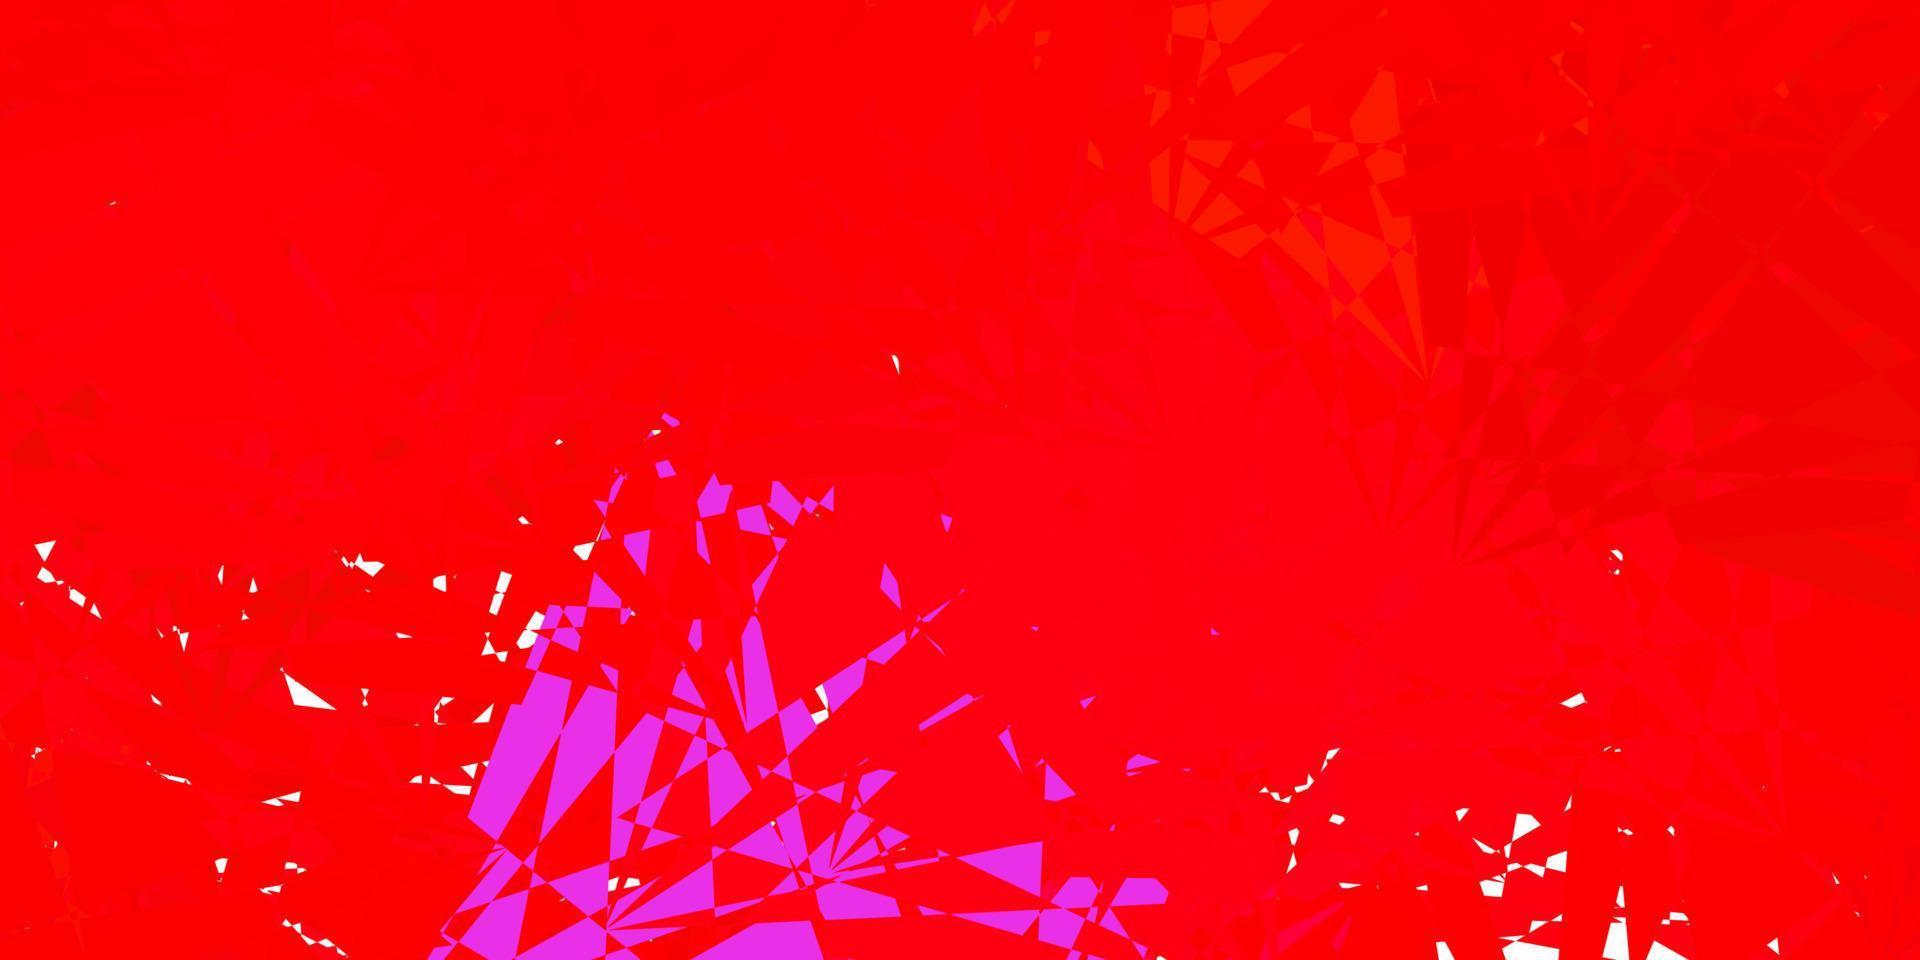 patrón de vector rojo oscuro con formas poligonales.